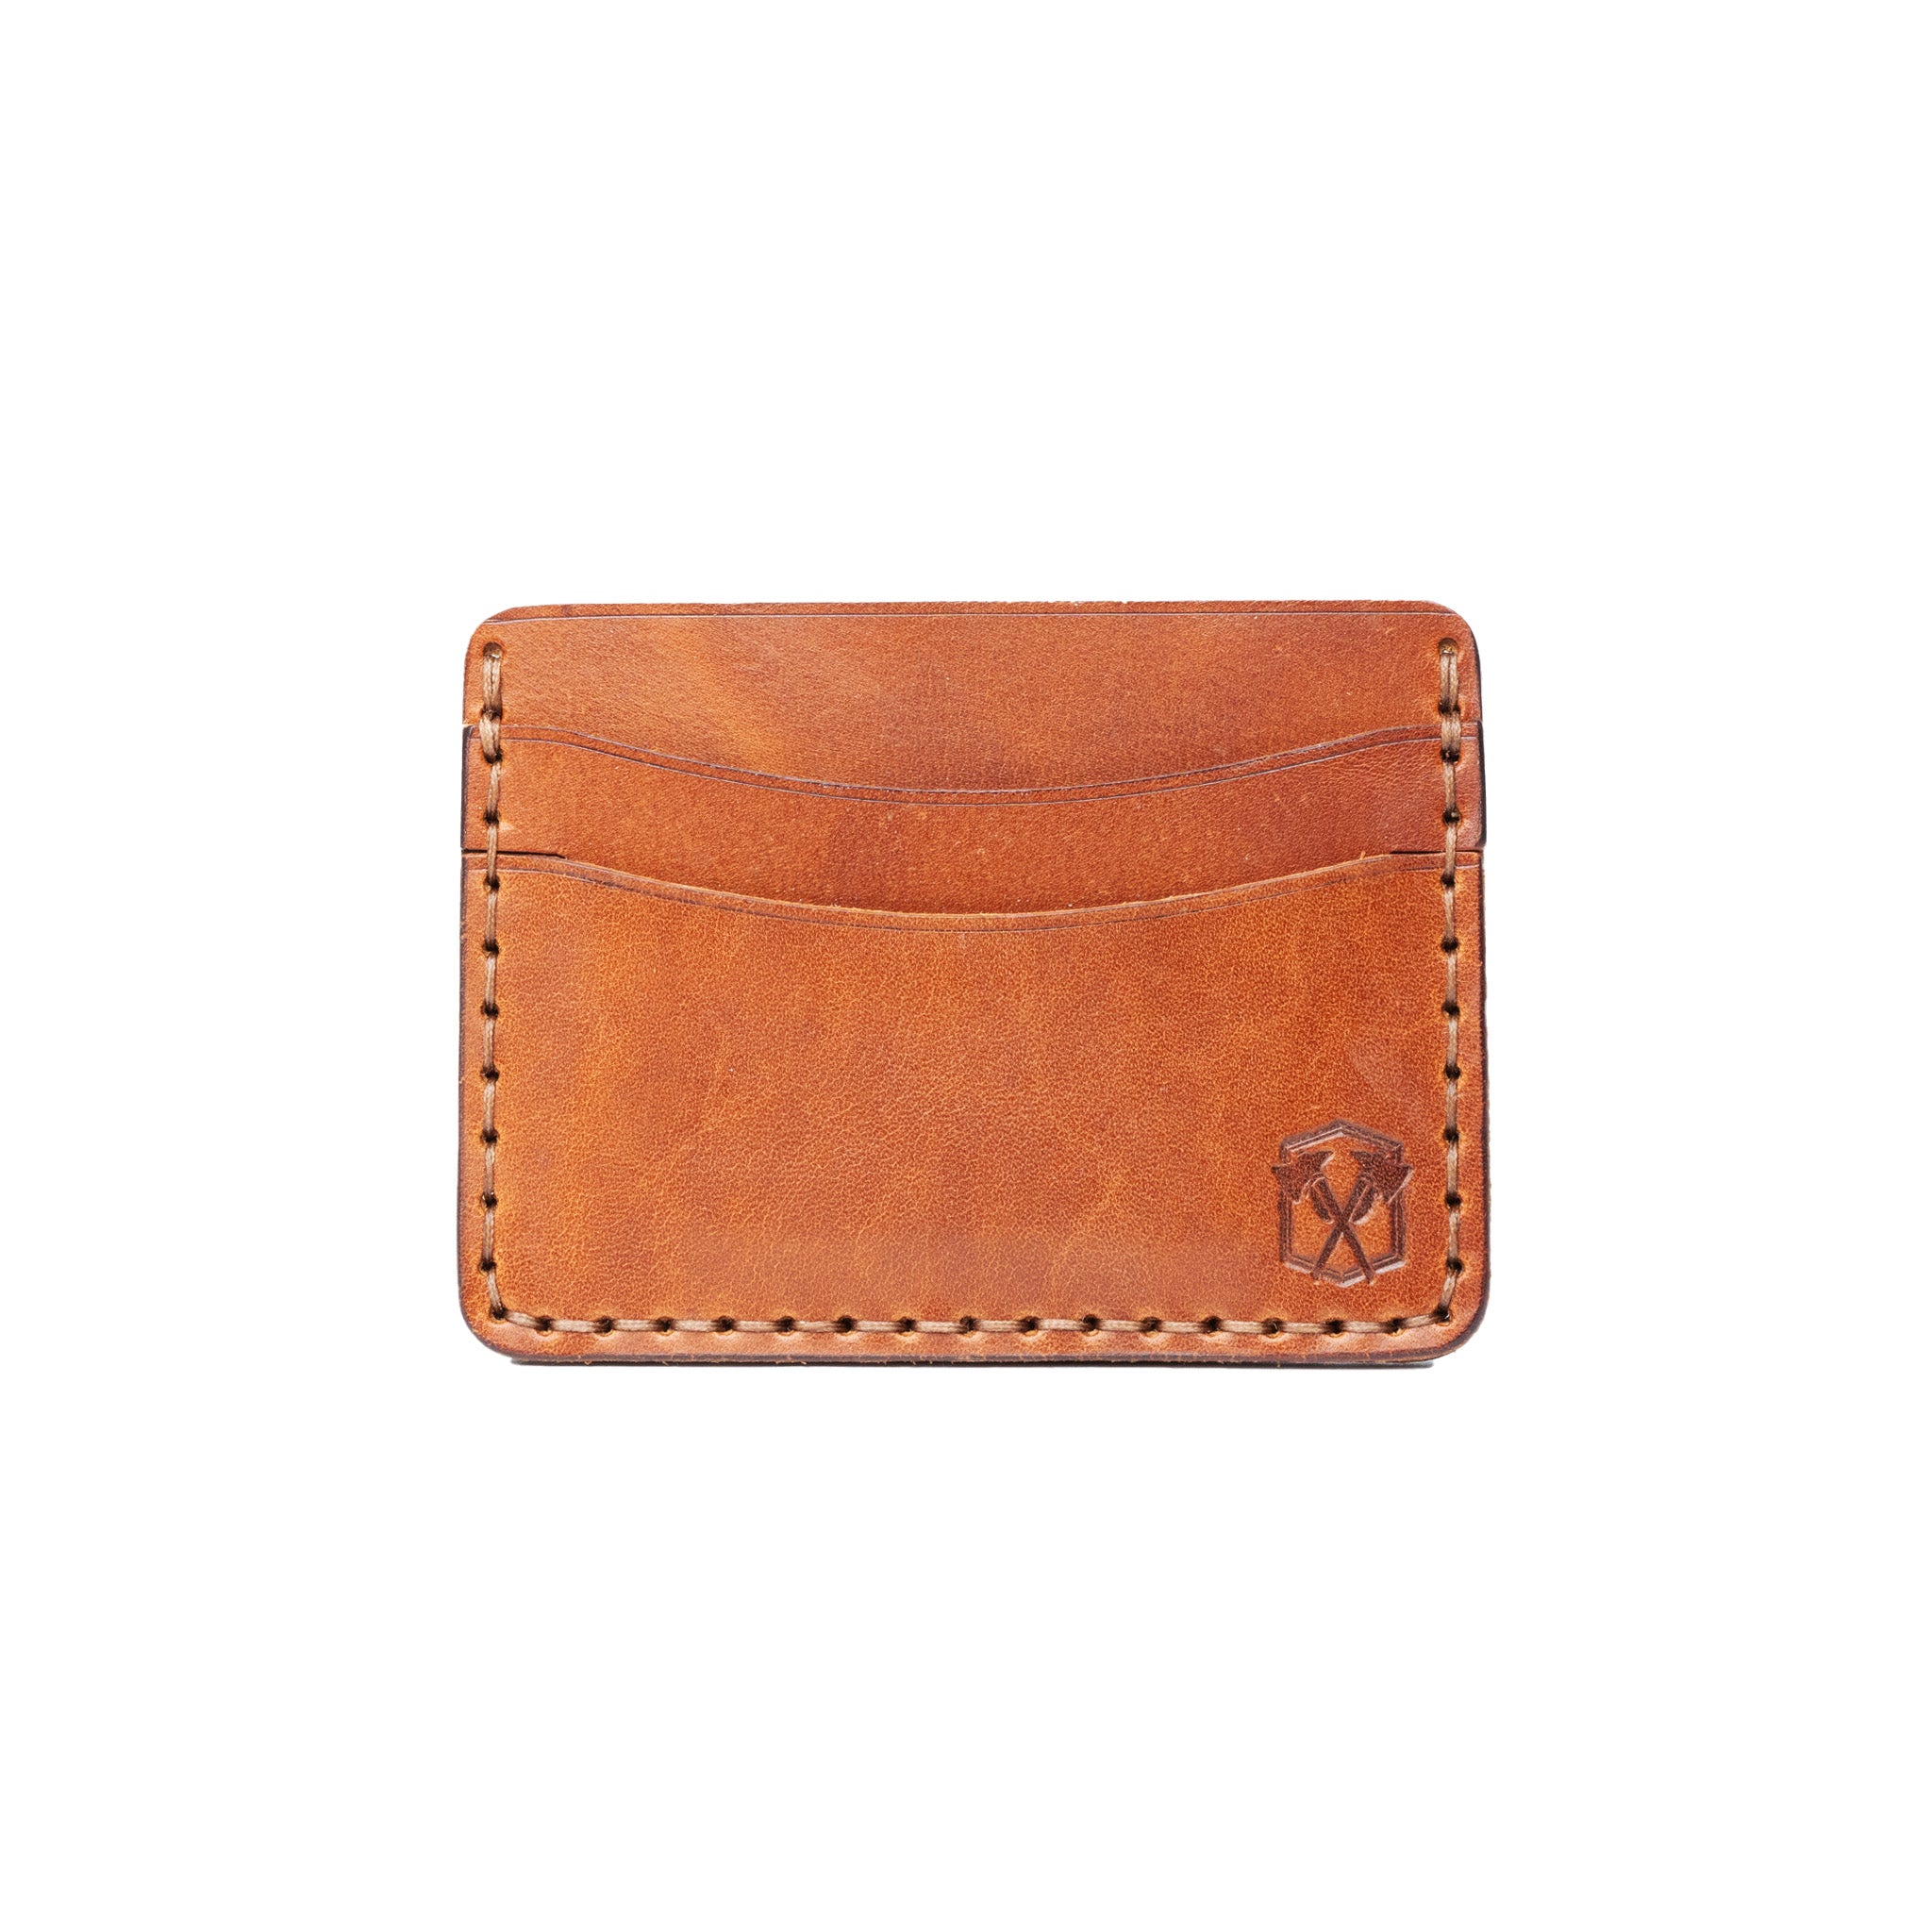 5 Pocket Leather Wallet